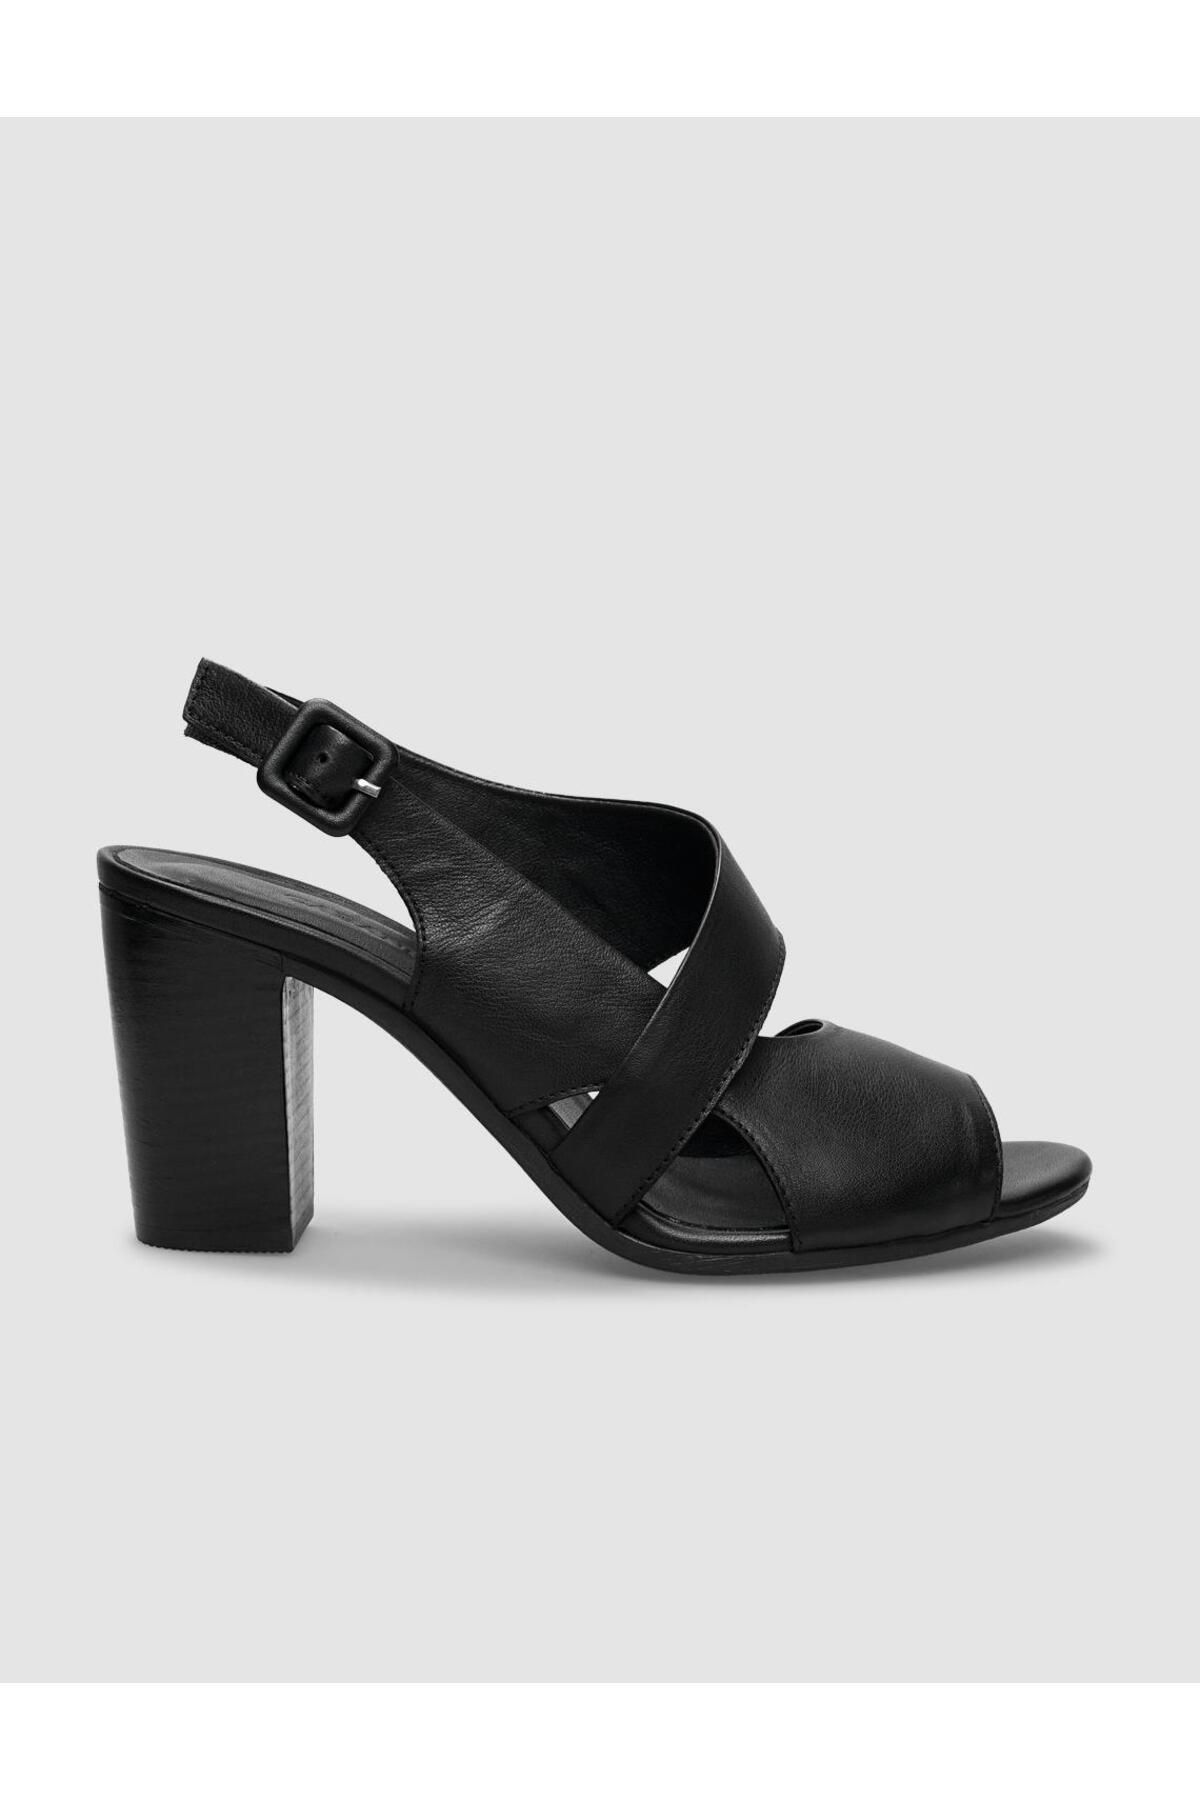 Cabani %100 Hakiki Deri Siyah Yandan Tokalı Kadın Topuklu Sandalet